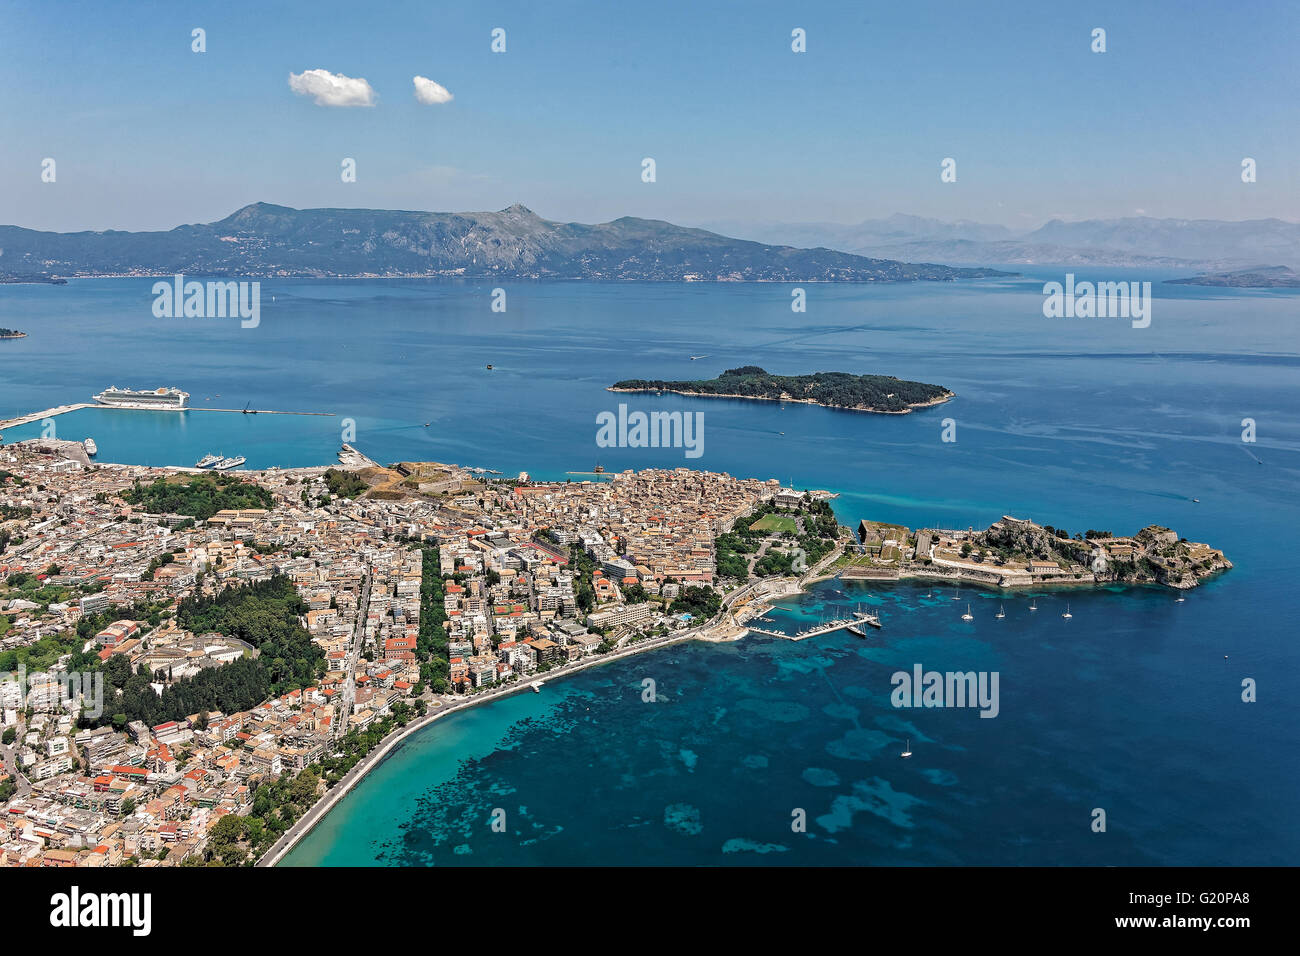 City of Corfu, Kerkyra, Greece, aerial view Stock Photo